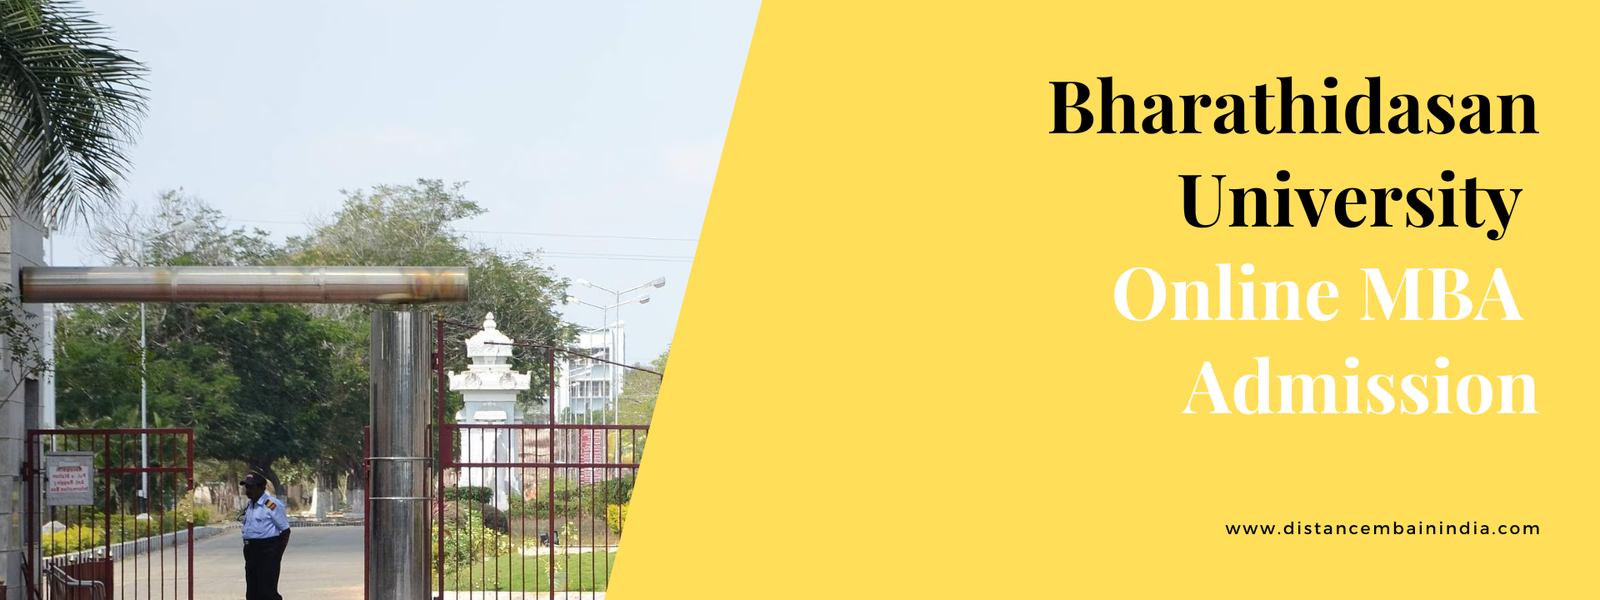 Bharathidasan University online MBA Admission